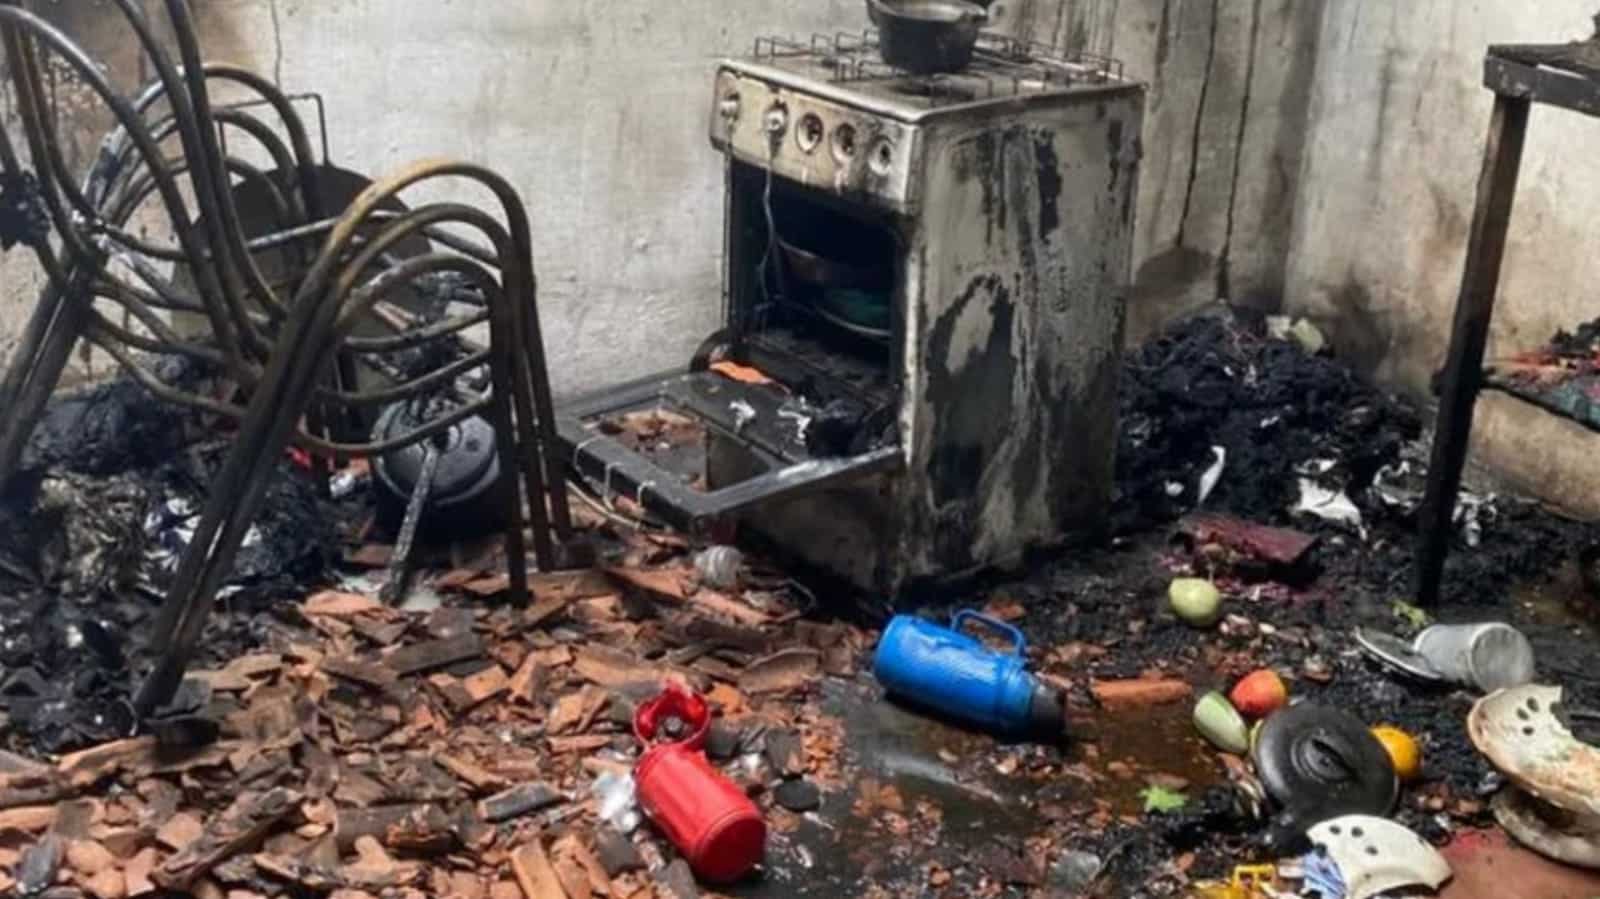 O incêndio foi iniciado na cozinha da residência, ninguém ficou ferido